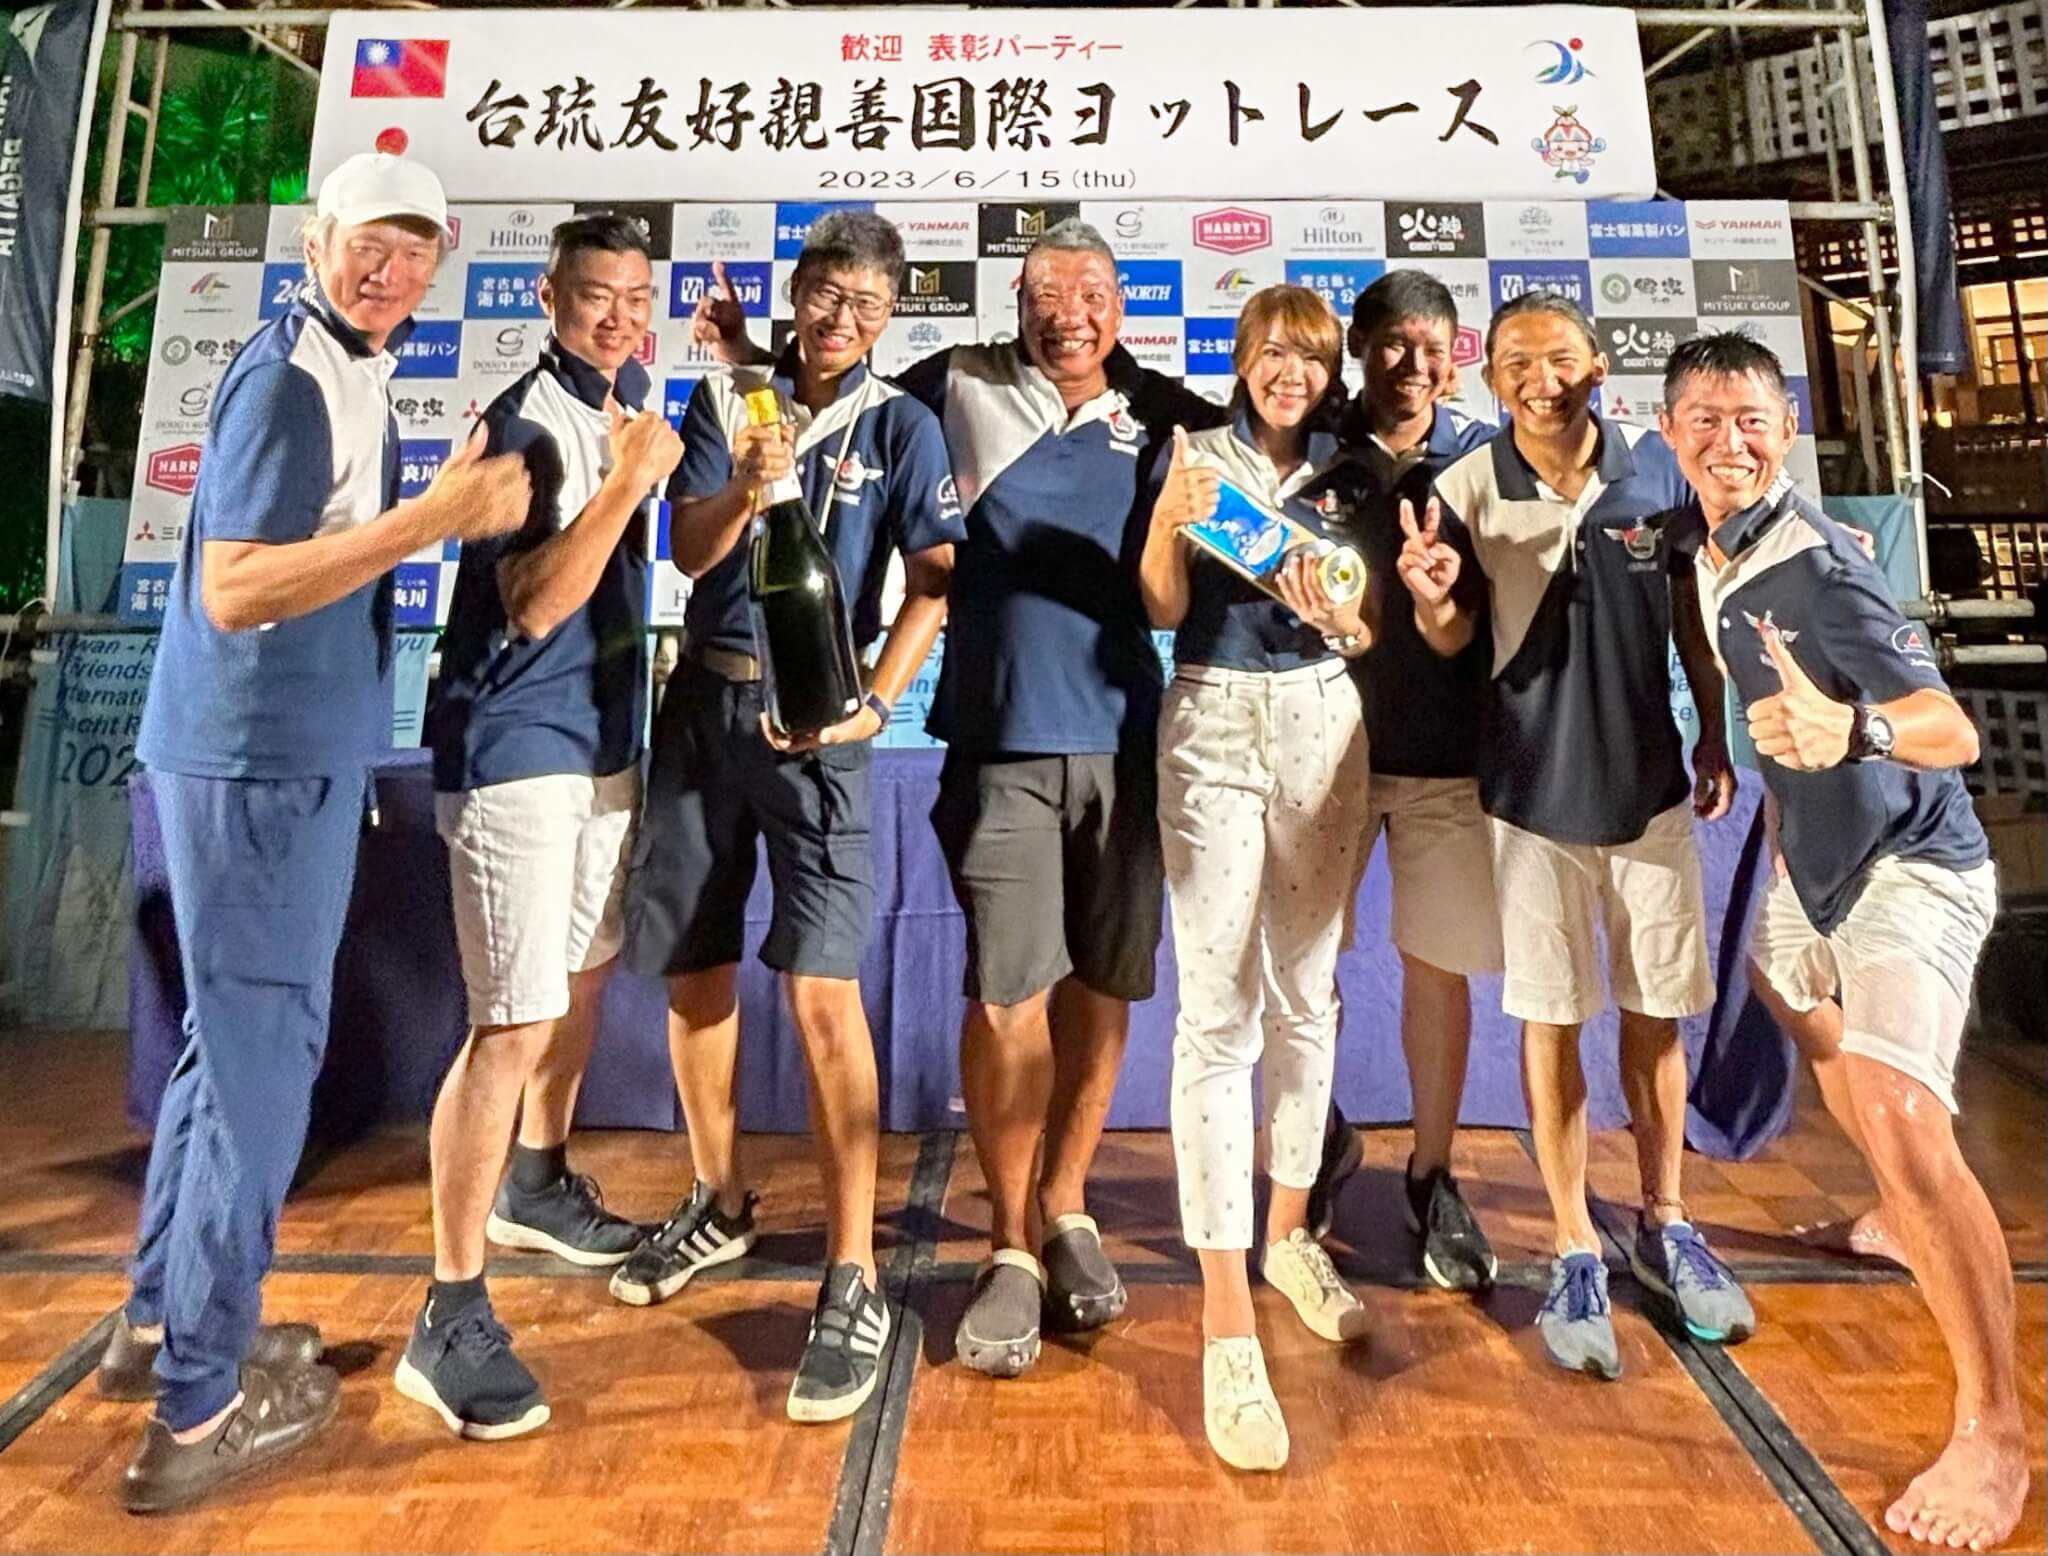 台琉國際賽駝峰隊拿下C組總冠軍